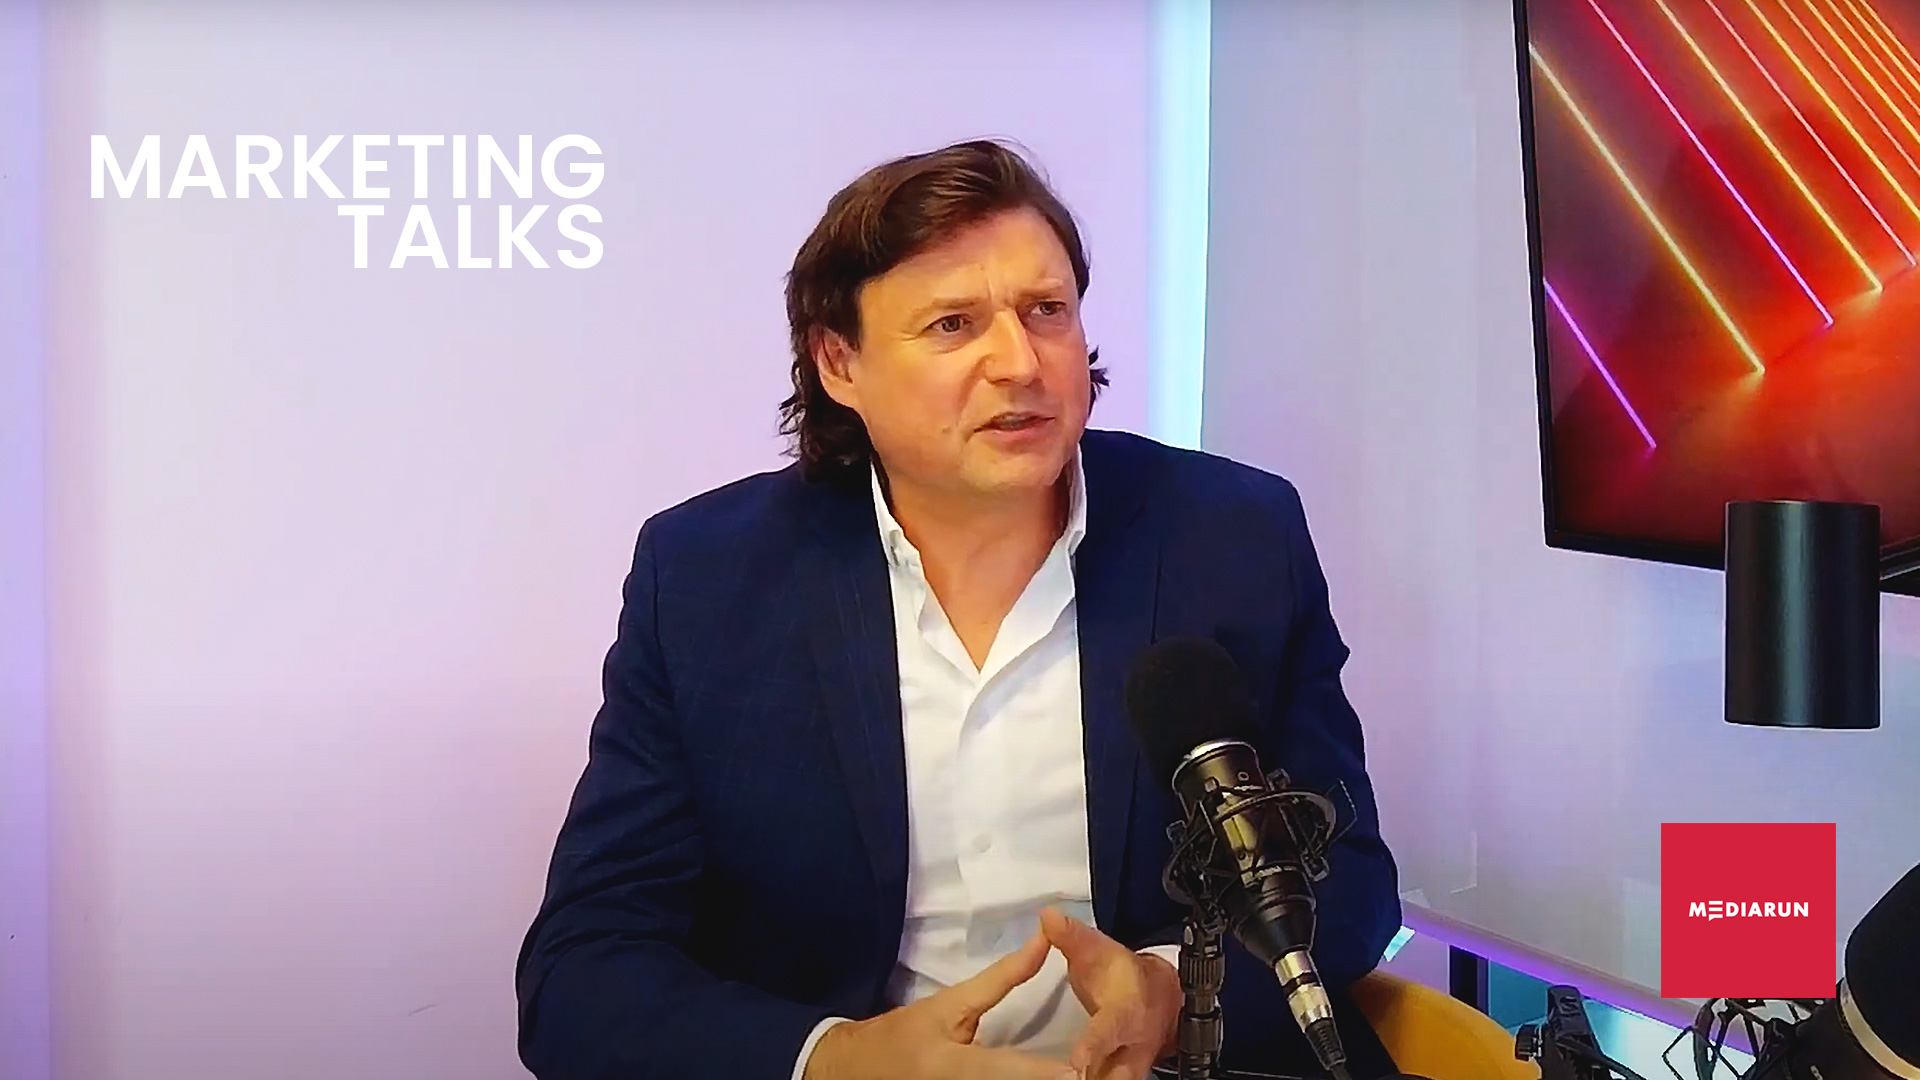 Wywiad z Pawłem Patkowskim Dyrektorem Marketingu Orange - MARKETING TALKS Marketing Talks MARKETIMG TALKS PAWEL PATKOWSKI 1920 1080